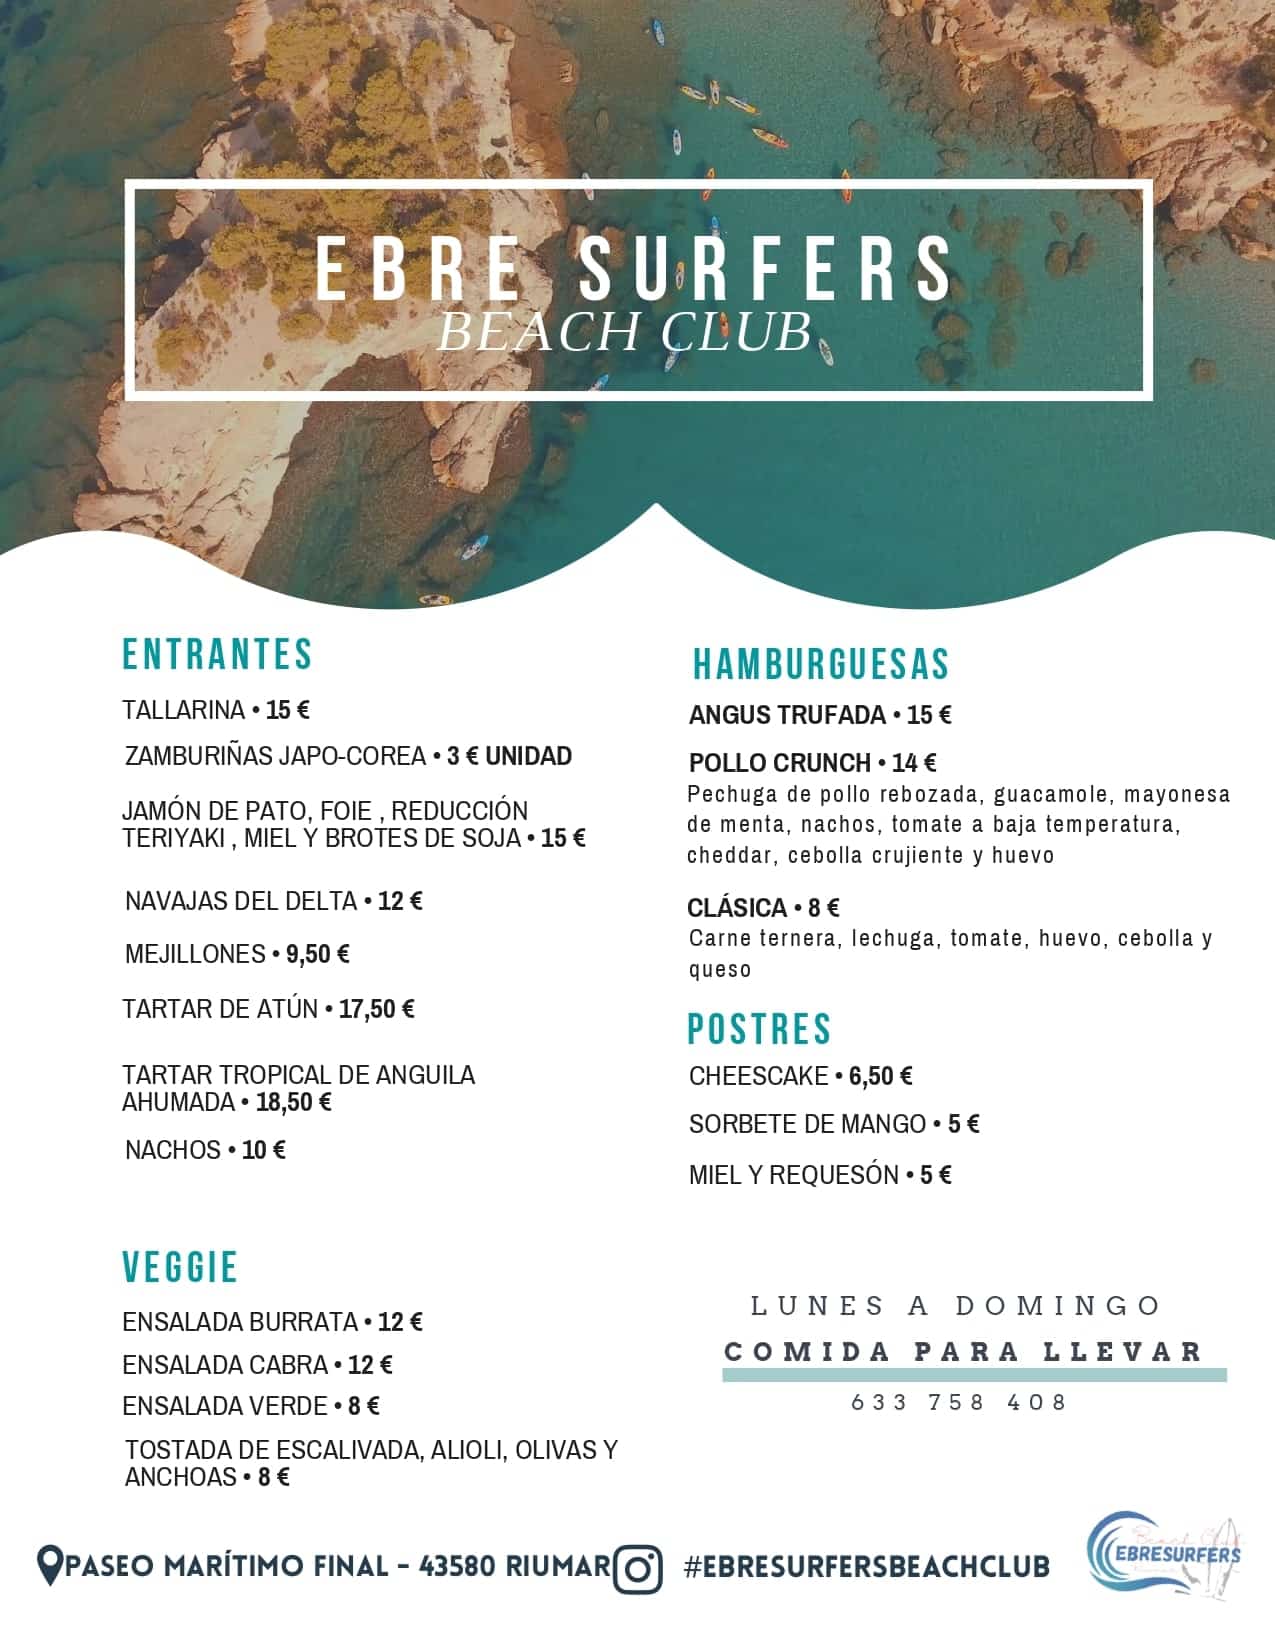 Beach Club - Ebre Surfers